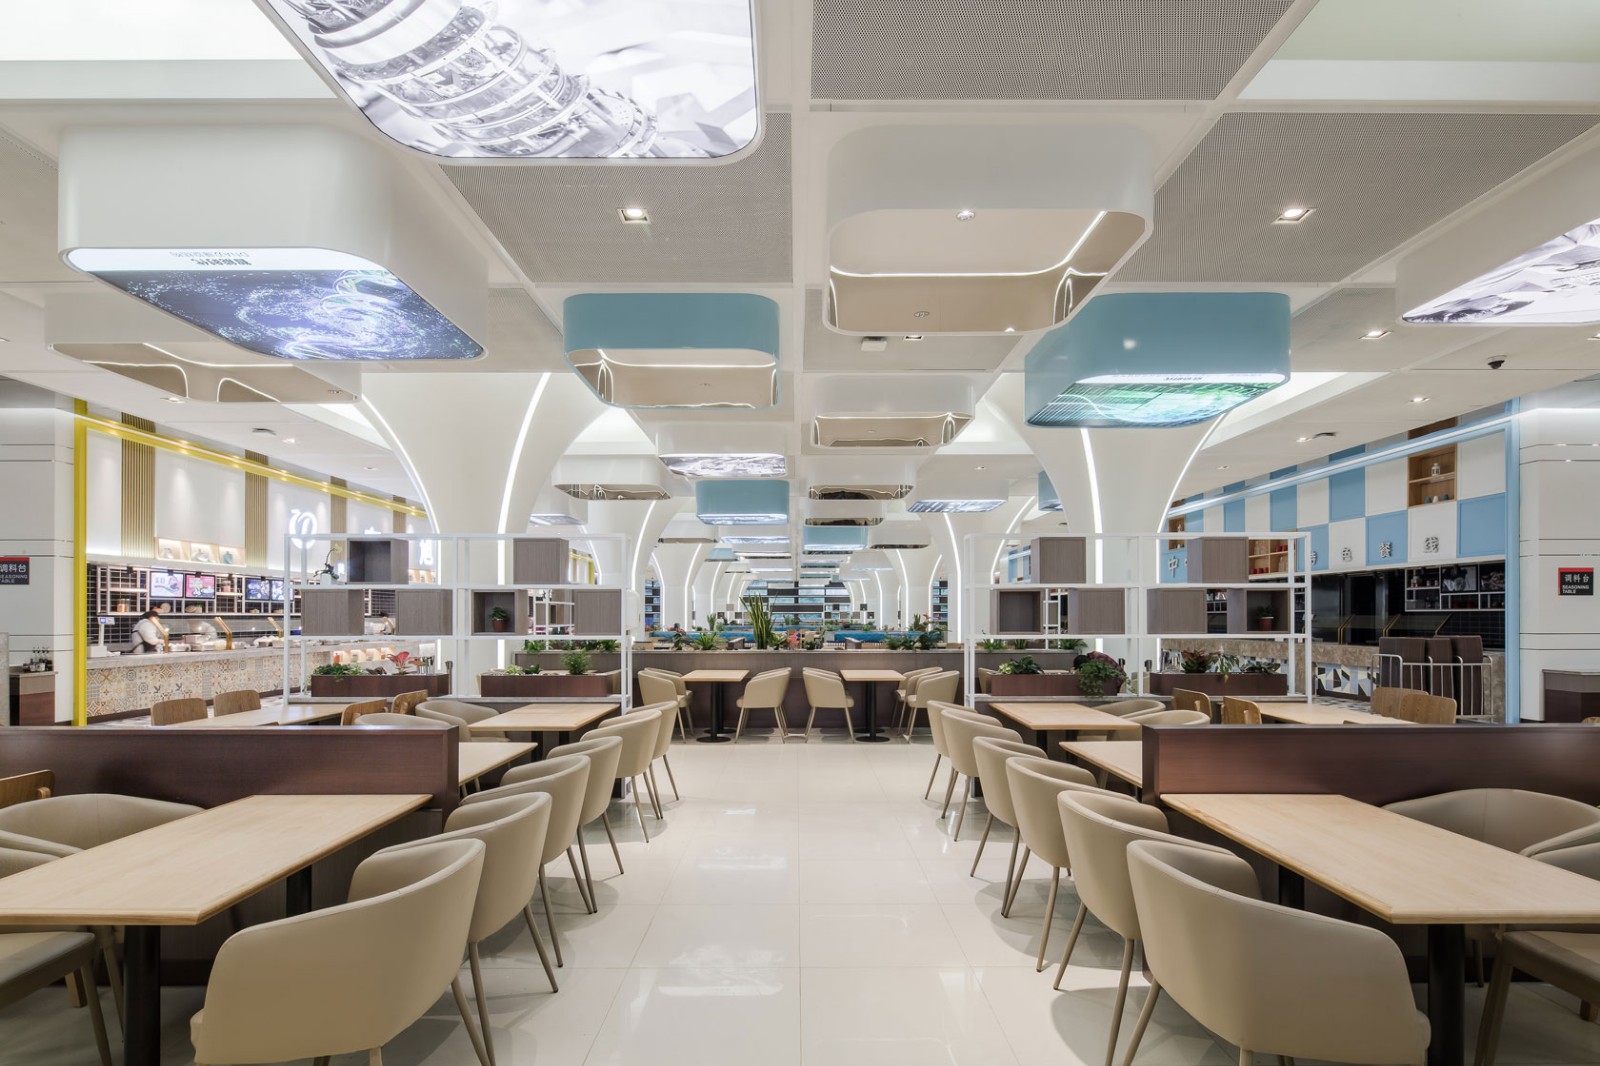 上海OPPO员工餐厅 - 办公空间设计 - 武汉金枫荣誉室内环境设计有限公司